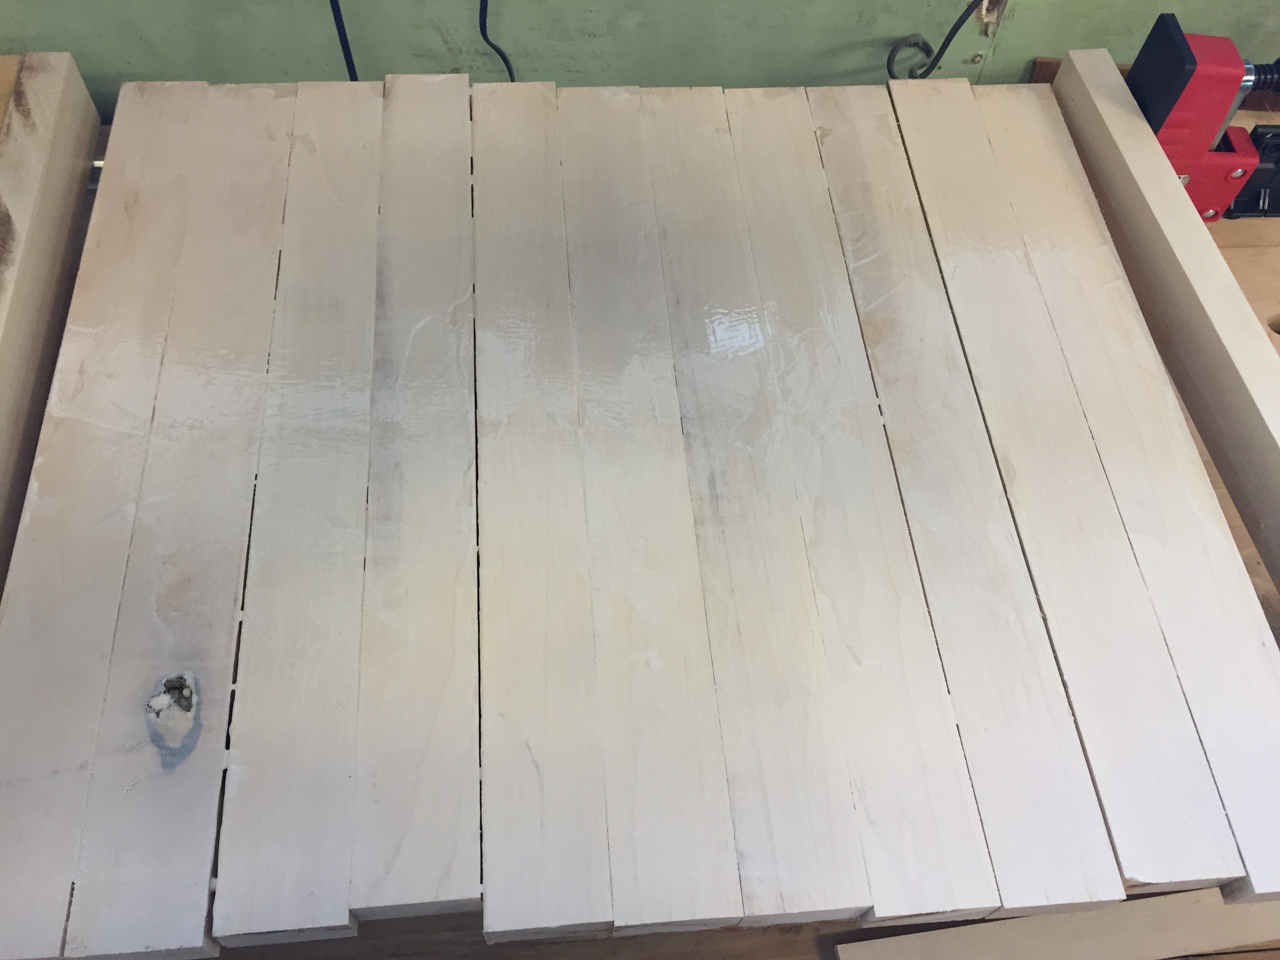 Cutting Board Build - Glue Spread